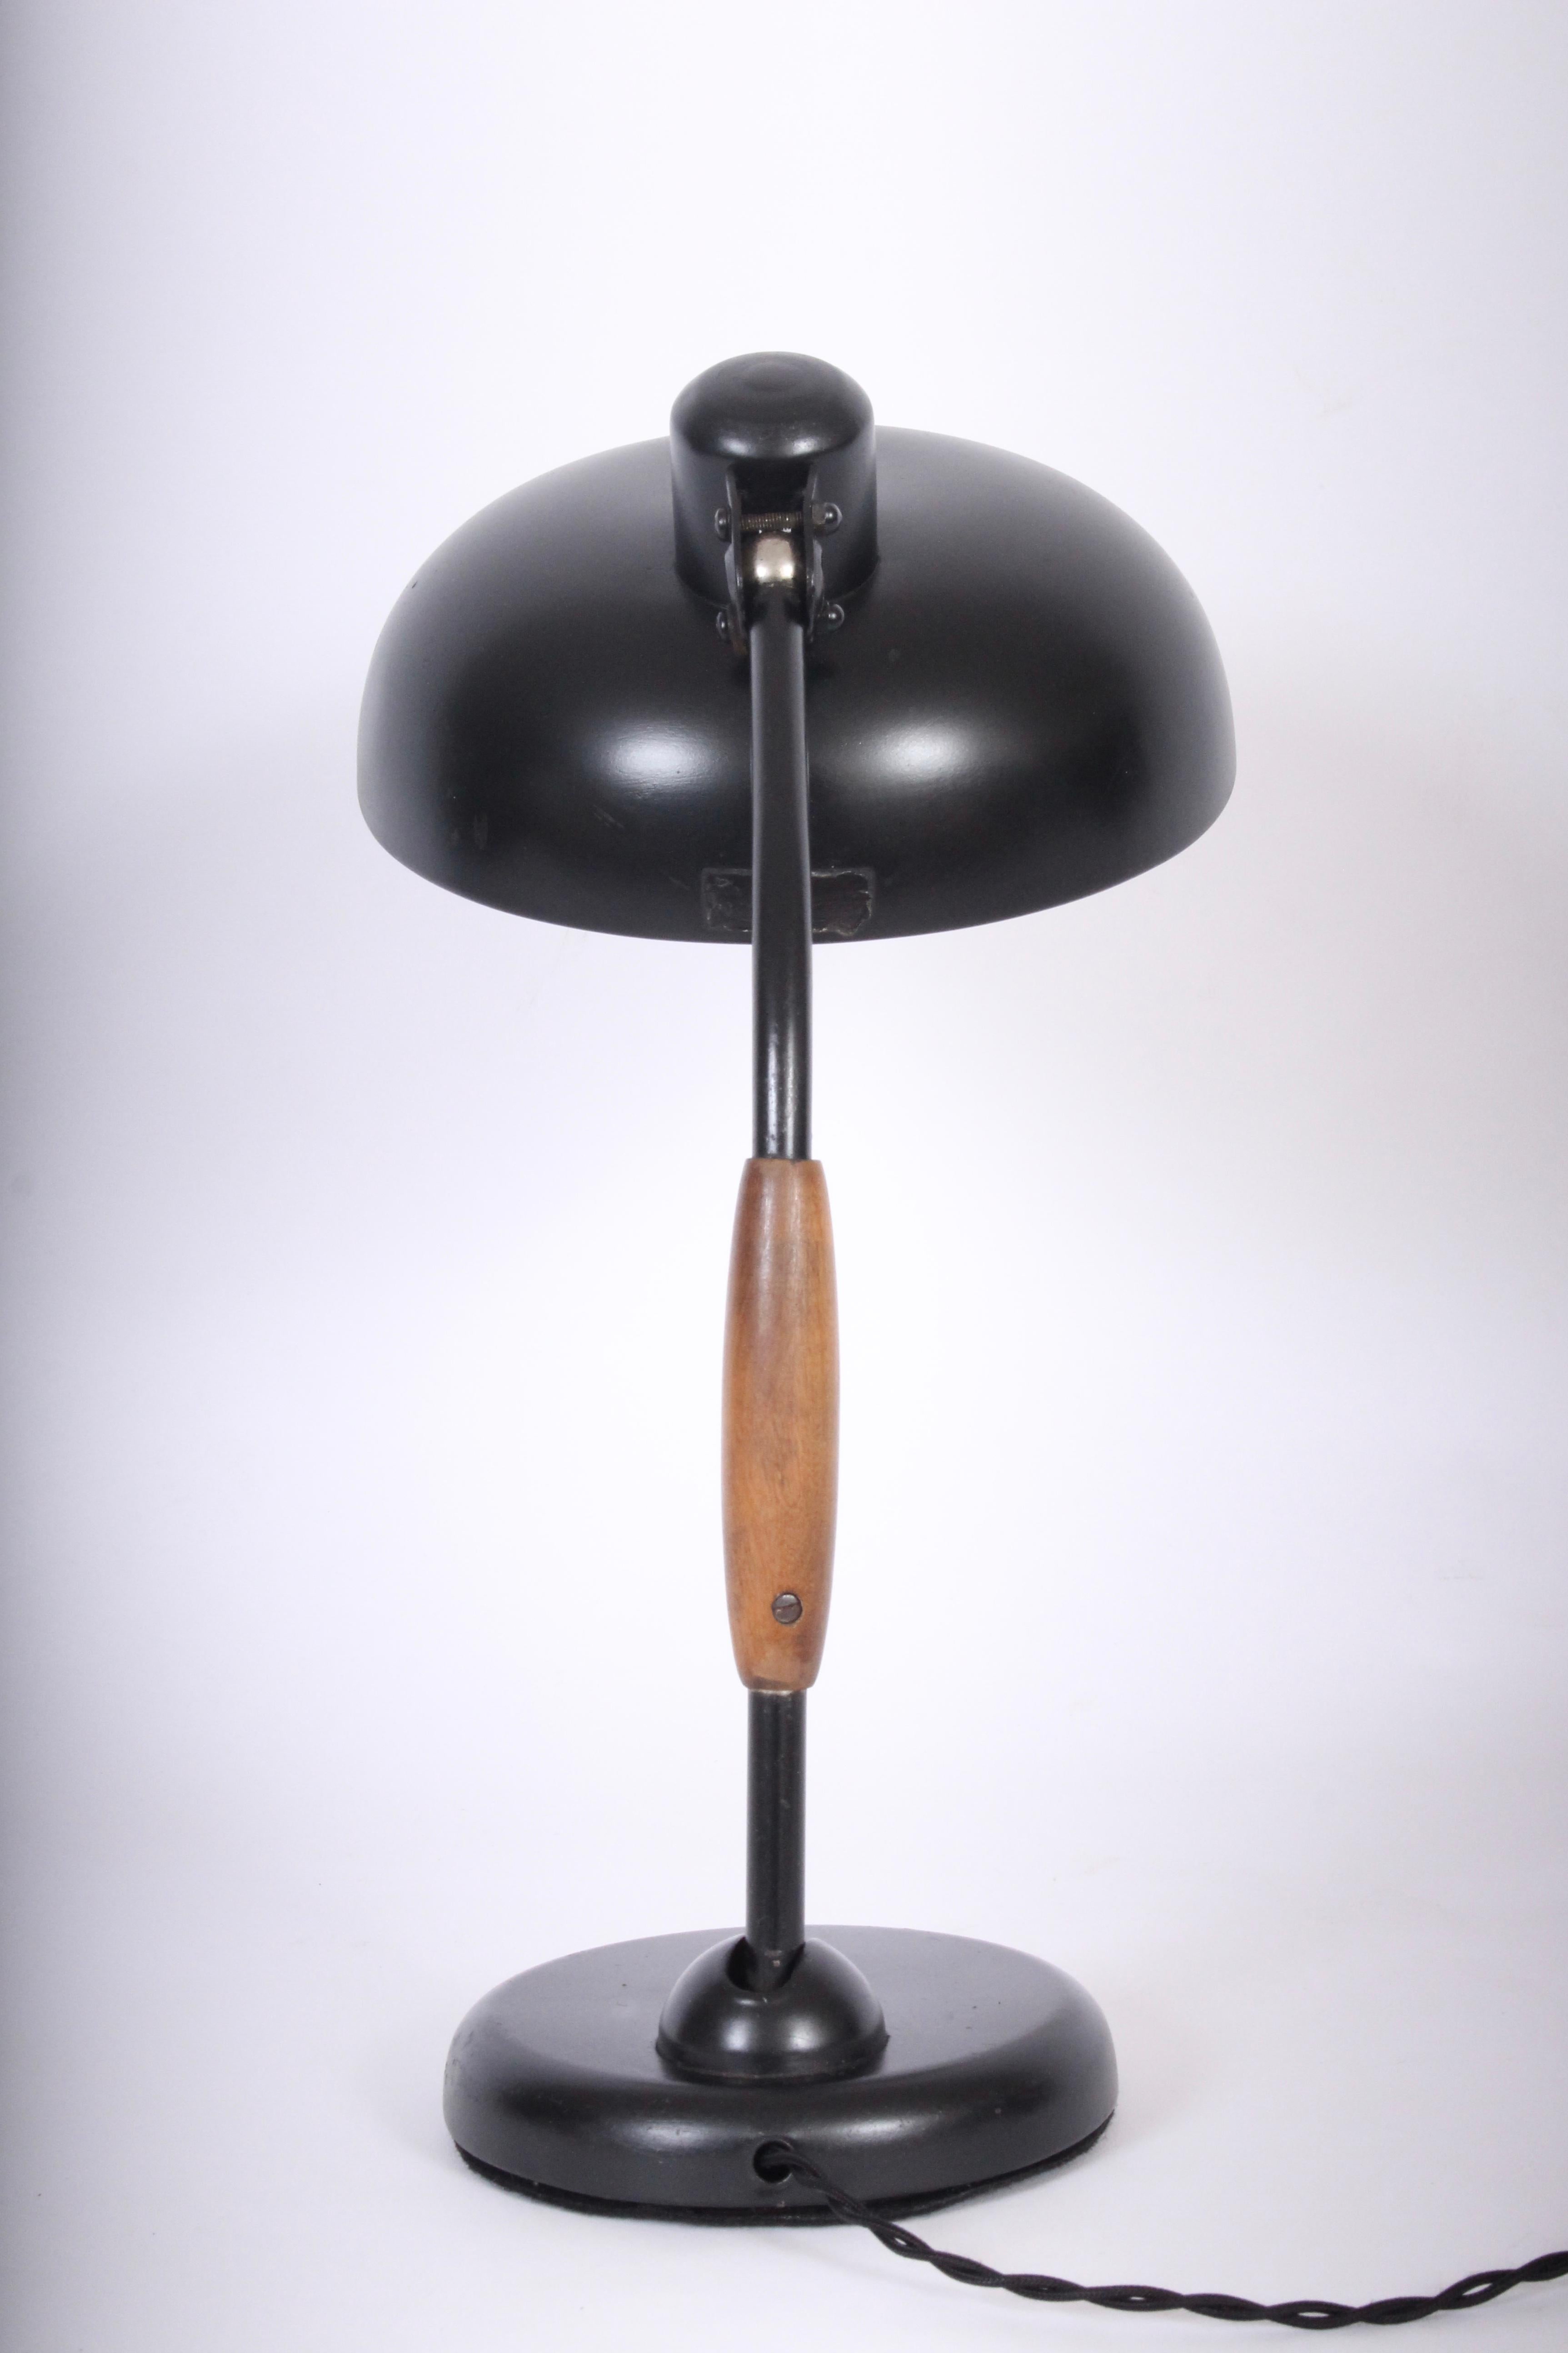 Tischlampe mit schwarzem Holzgriff, entworfen von Christian Dell im Jahr 1933. Produziert von Koranda, Wien. Ausgestattet mit einem schwenkbaren schwarzen Metallstiel, einem Holzgriff, einem verstellbaren und breiten 9D schwarzen Metallschirm auf